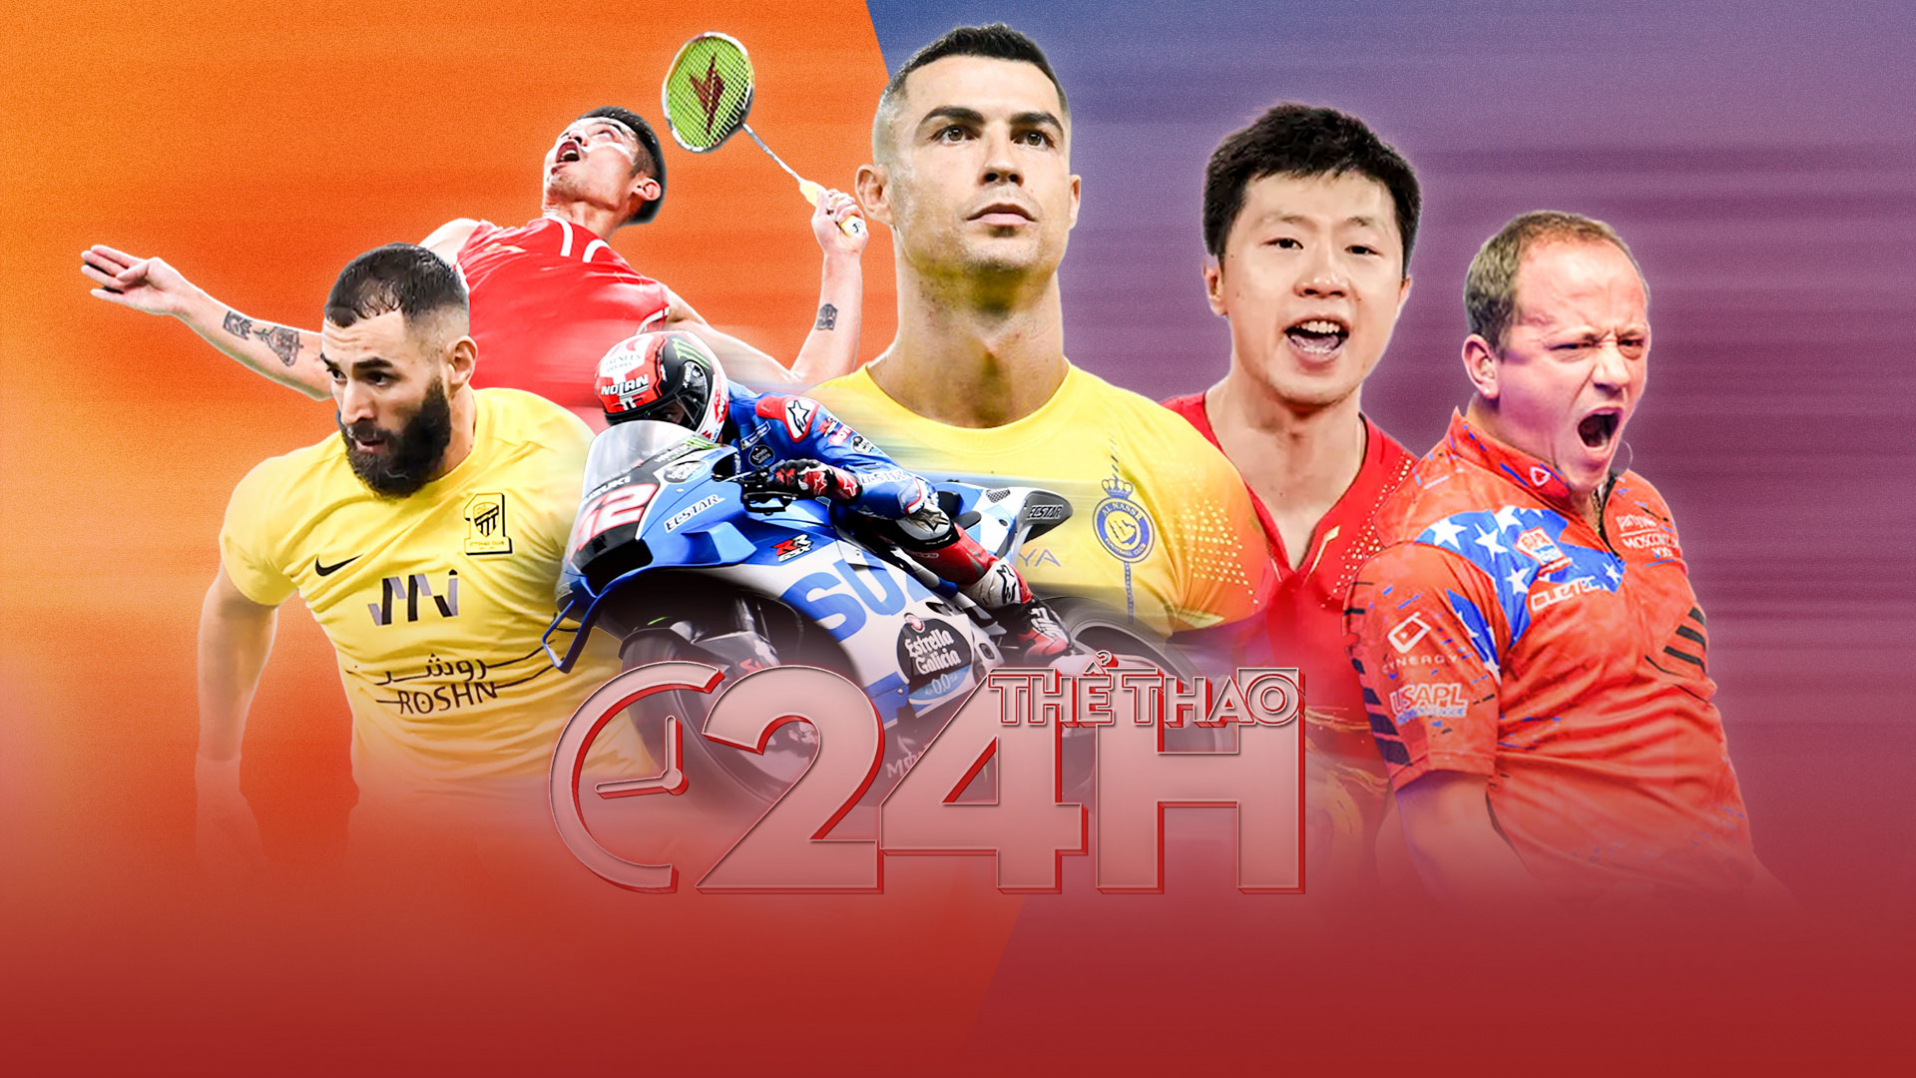 Thể thao 24h - tổng hợp Thể thao đặc sắc từ MyTV